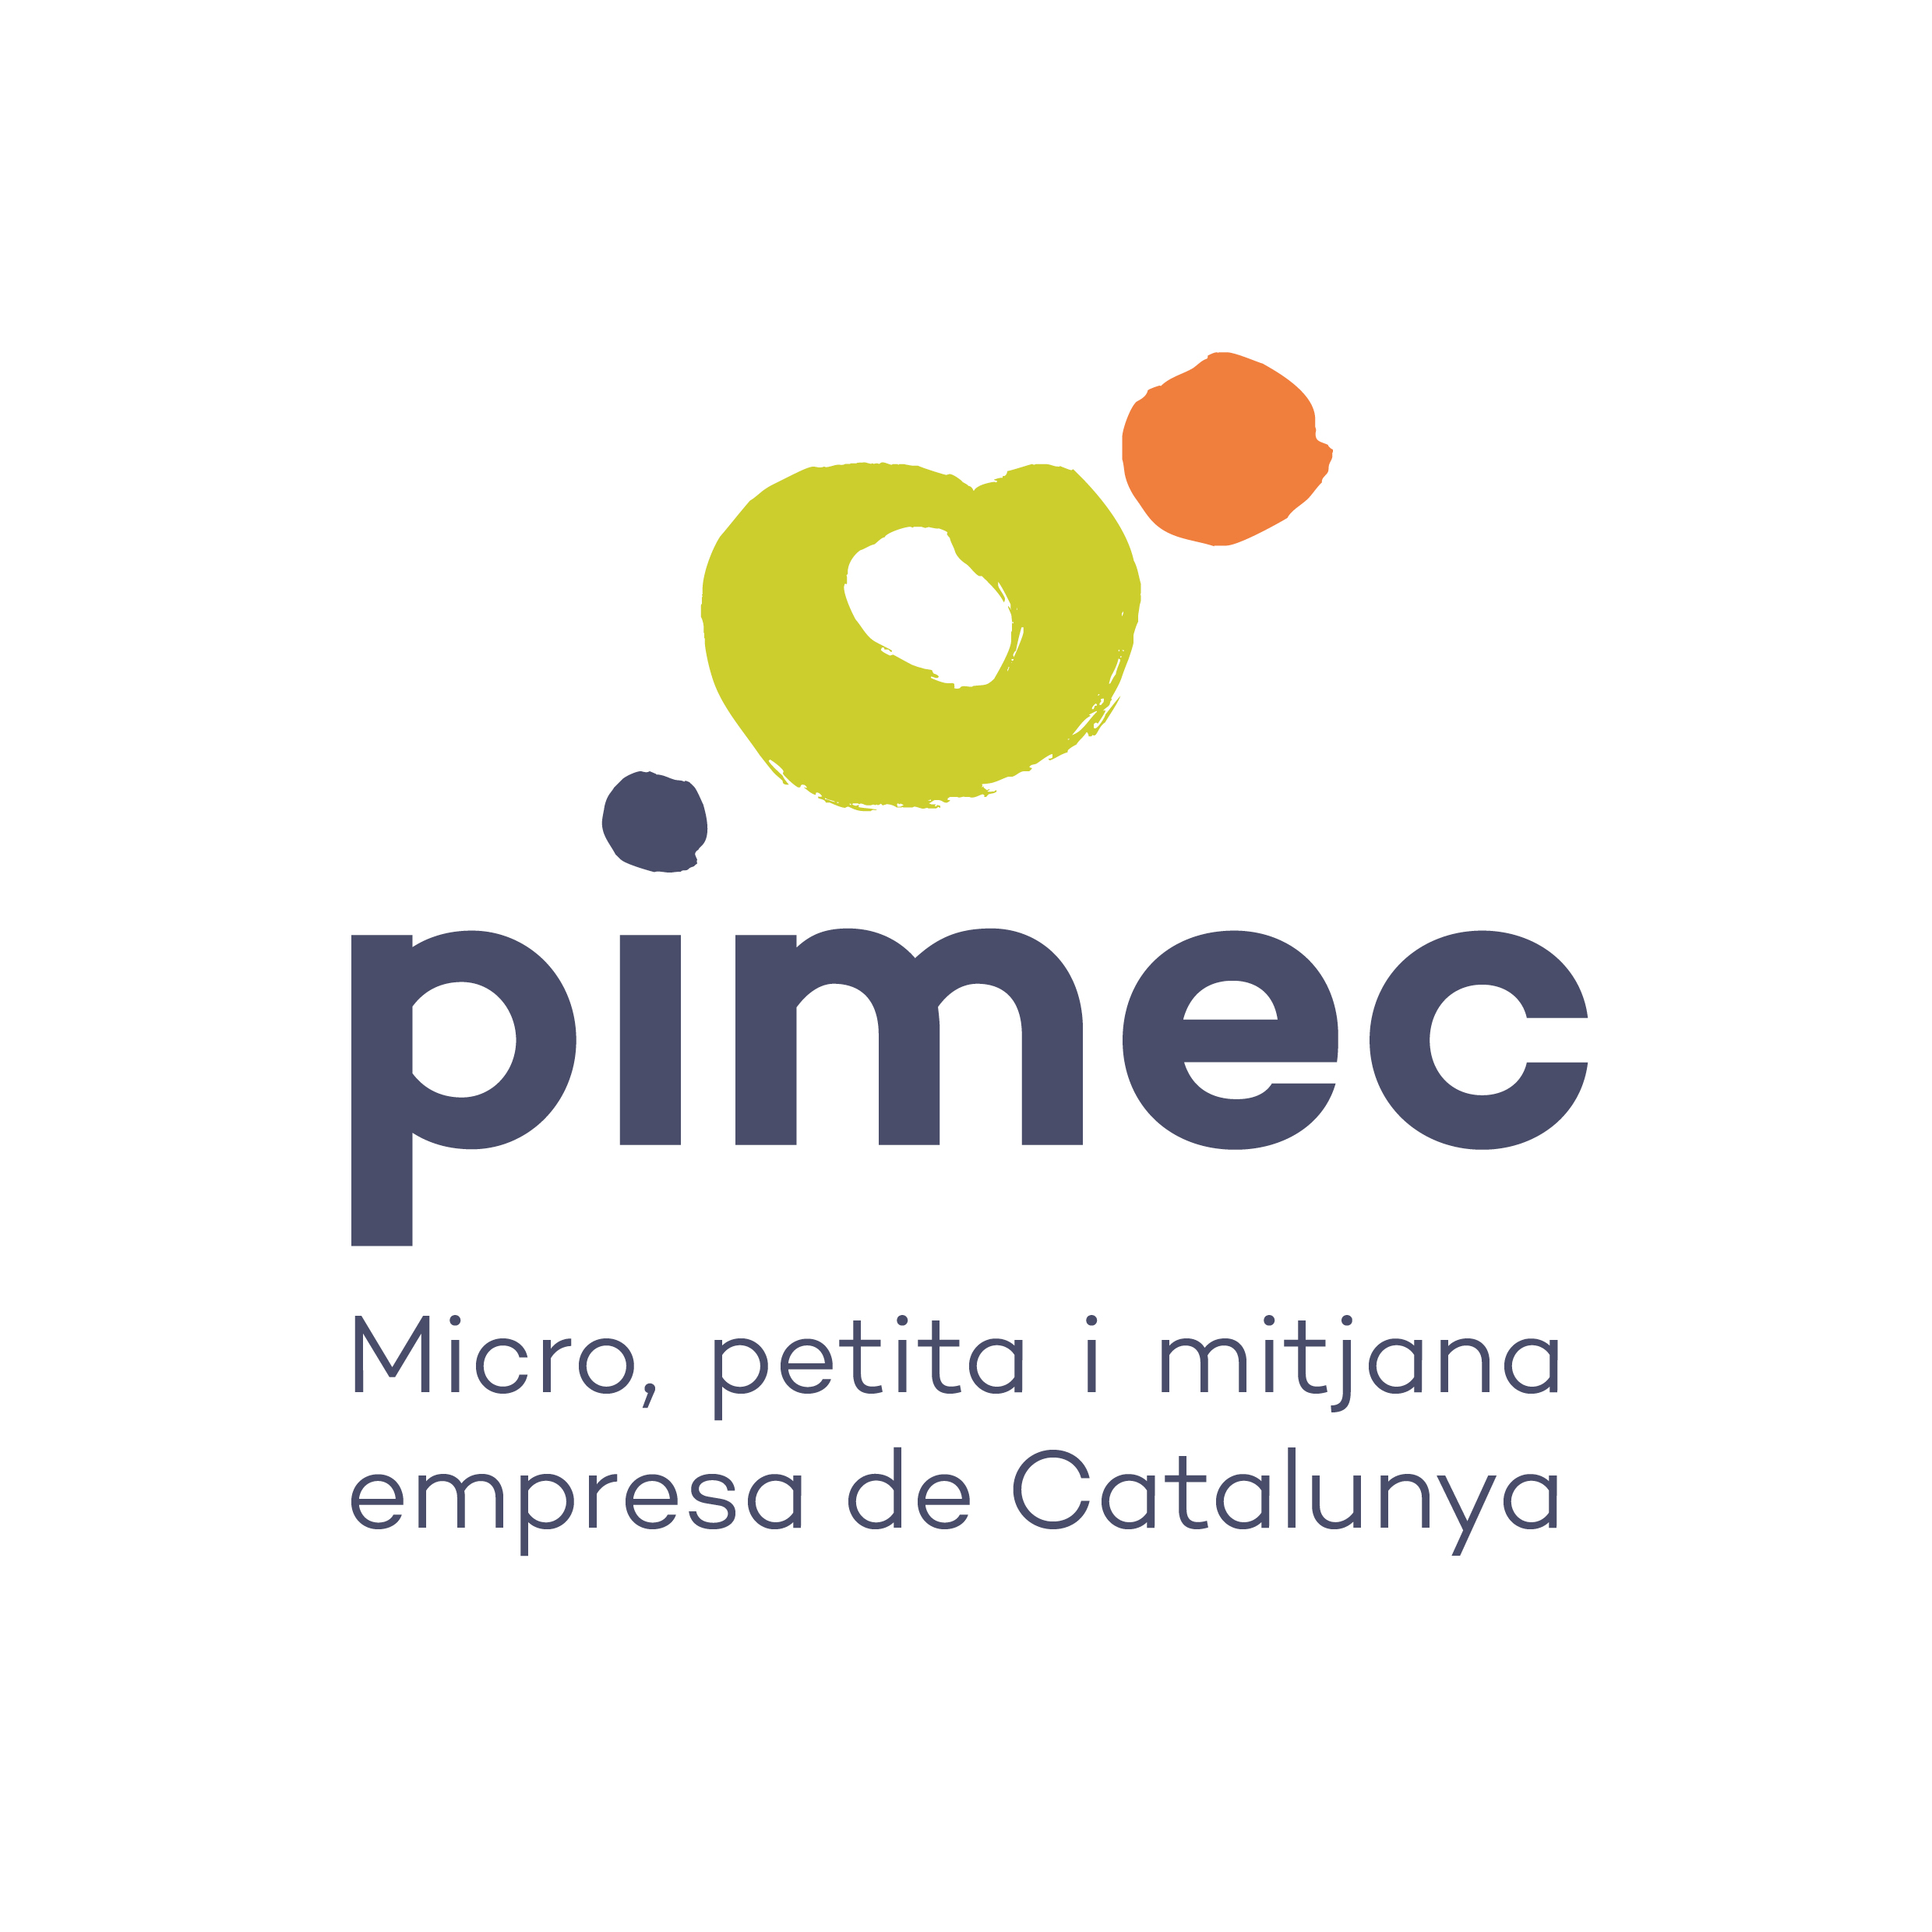 PIMEC, Micro, petita i mitjana empresa de Catalunya